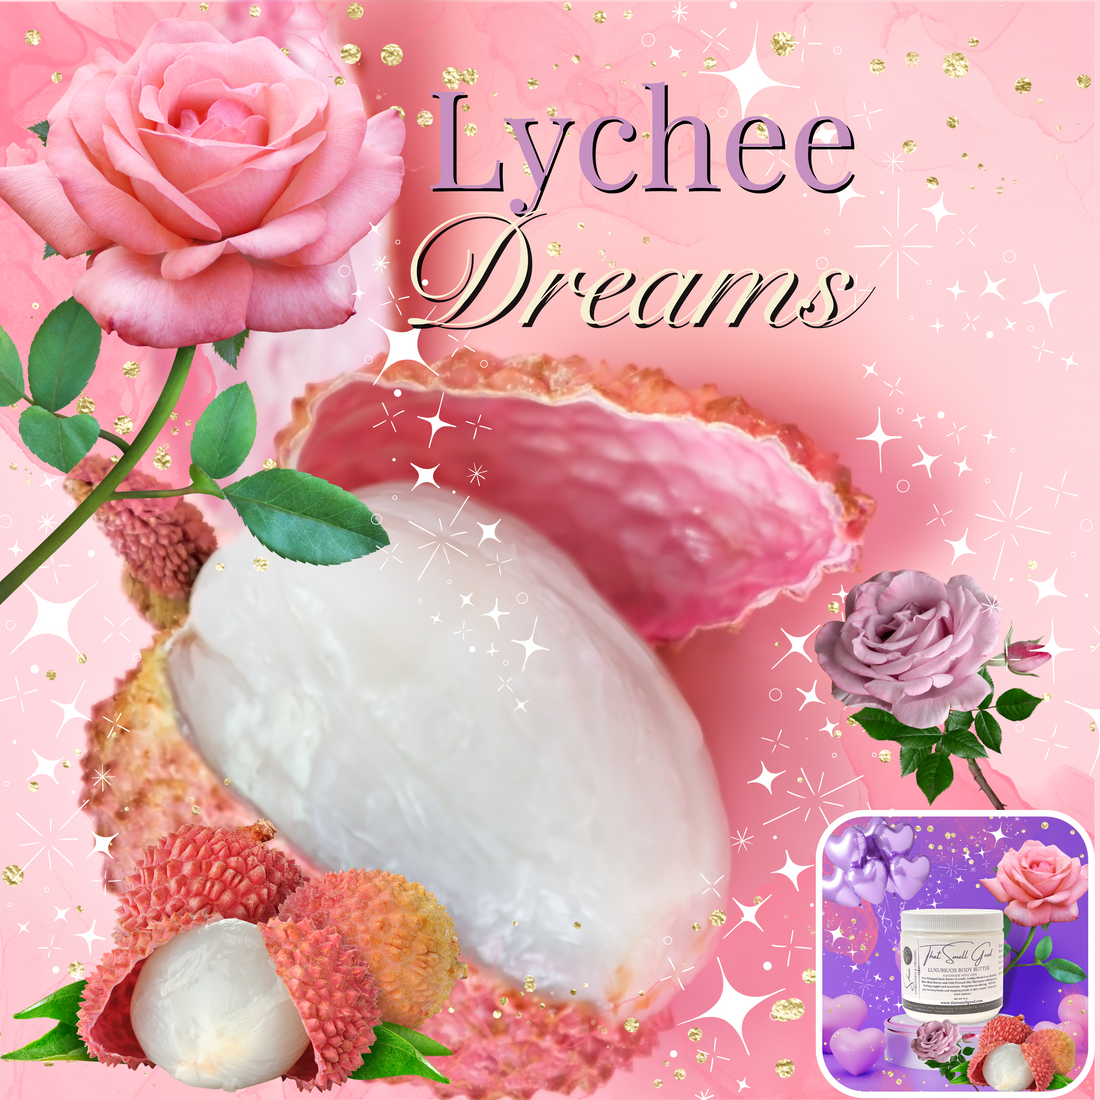 Lychee Dreams Body Butter